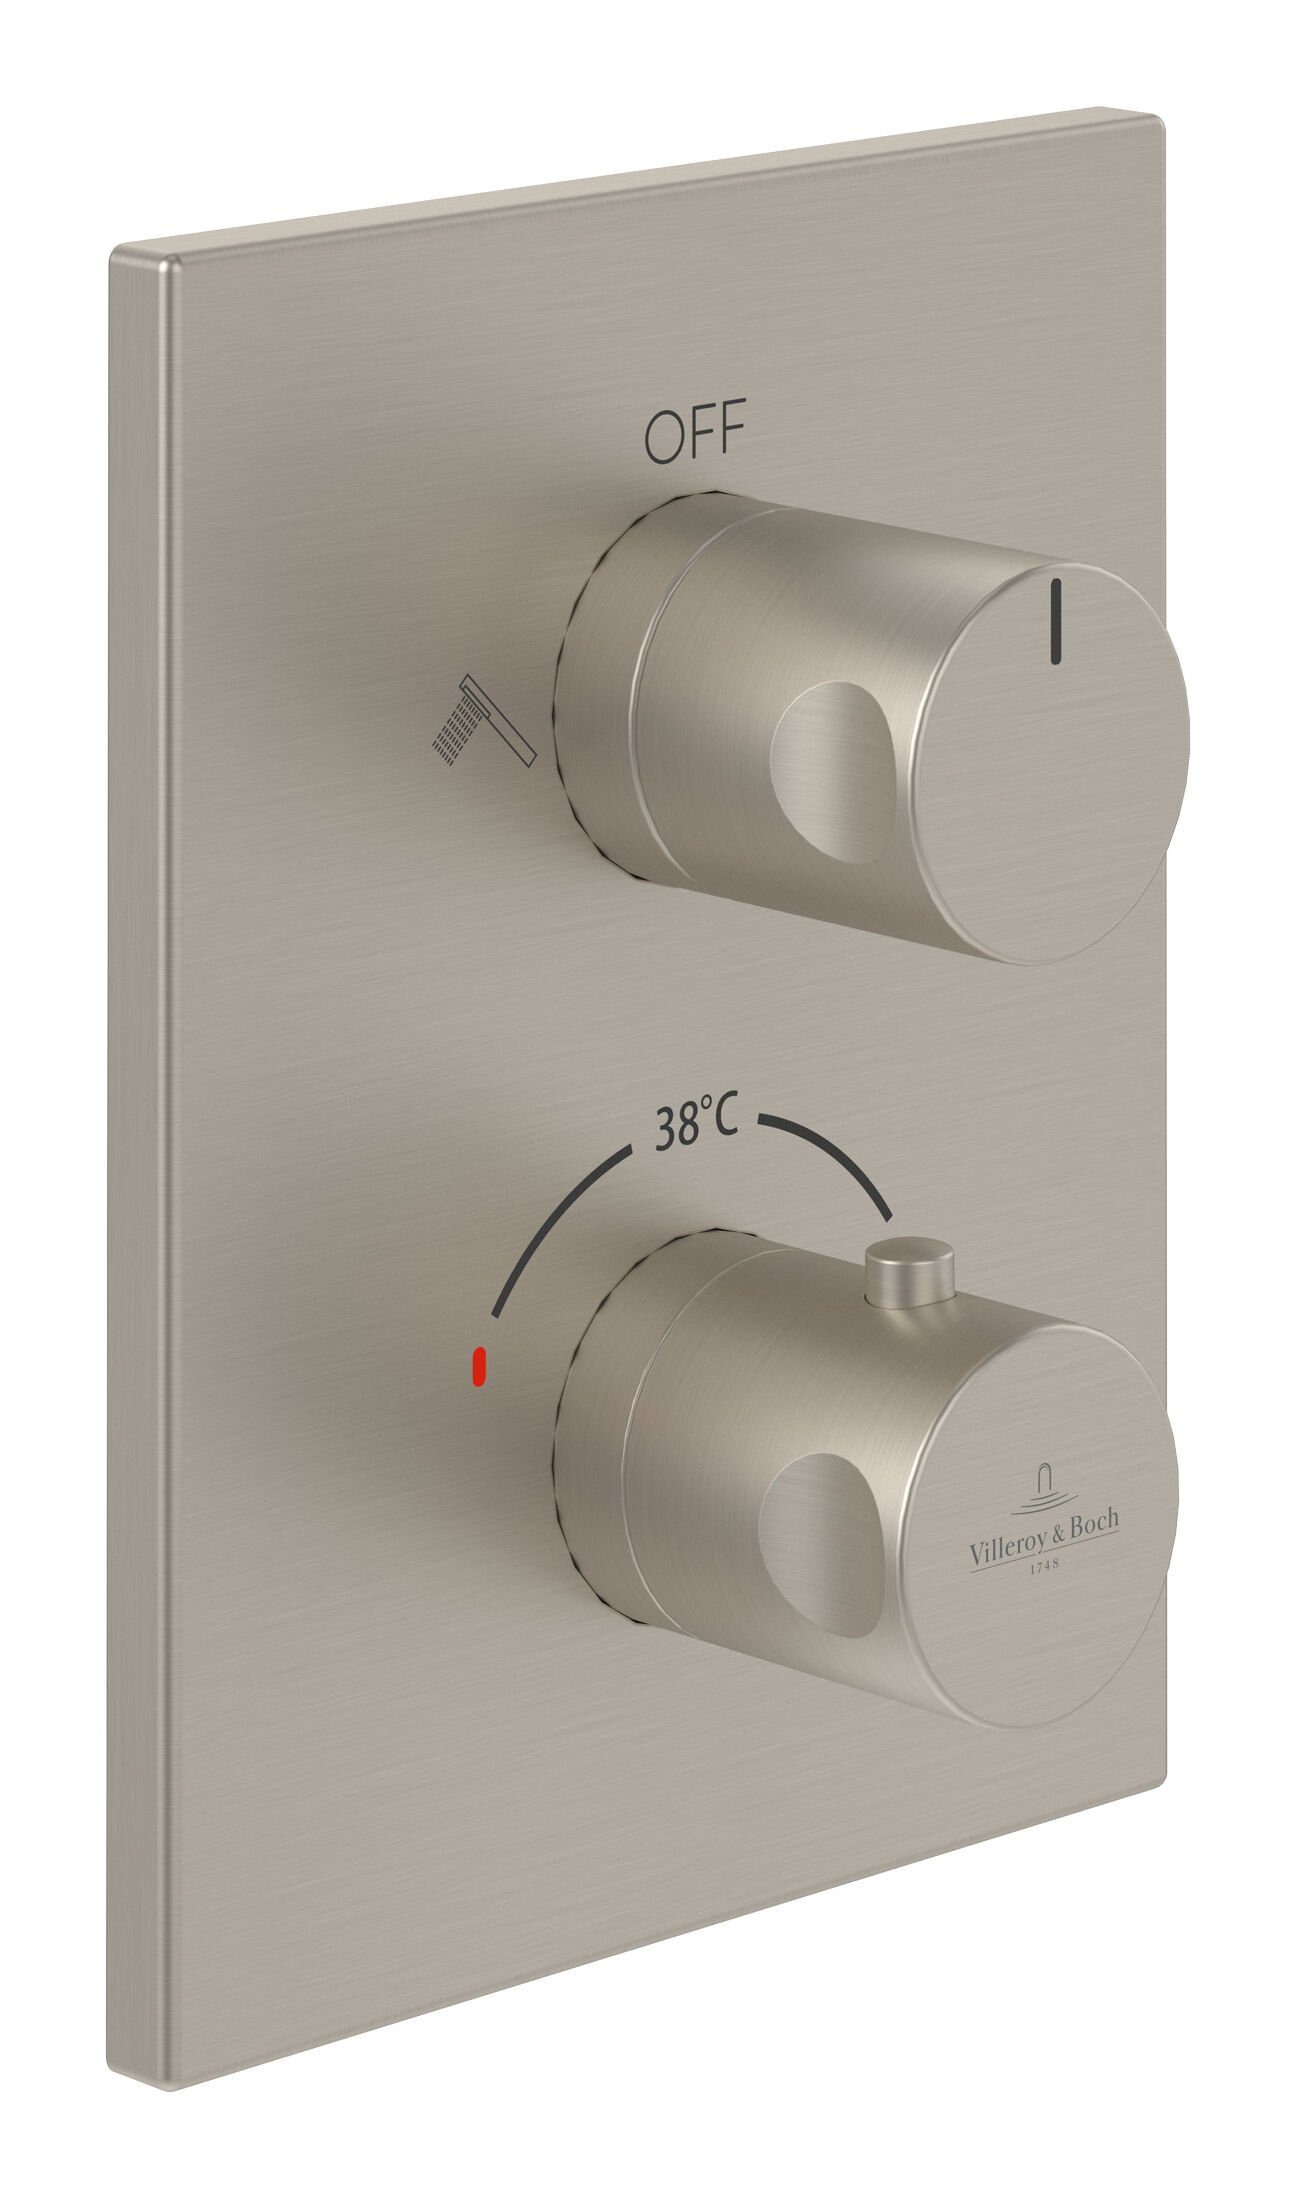 Villeroy & Boch Unterputzarmatur Universal Taps & Fittings Unterputz-Thermostat, Eckig, mit Umsteller - Brushed Nickel Matt